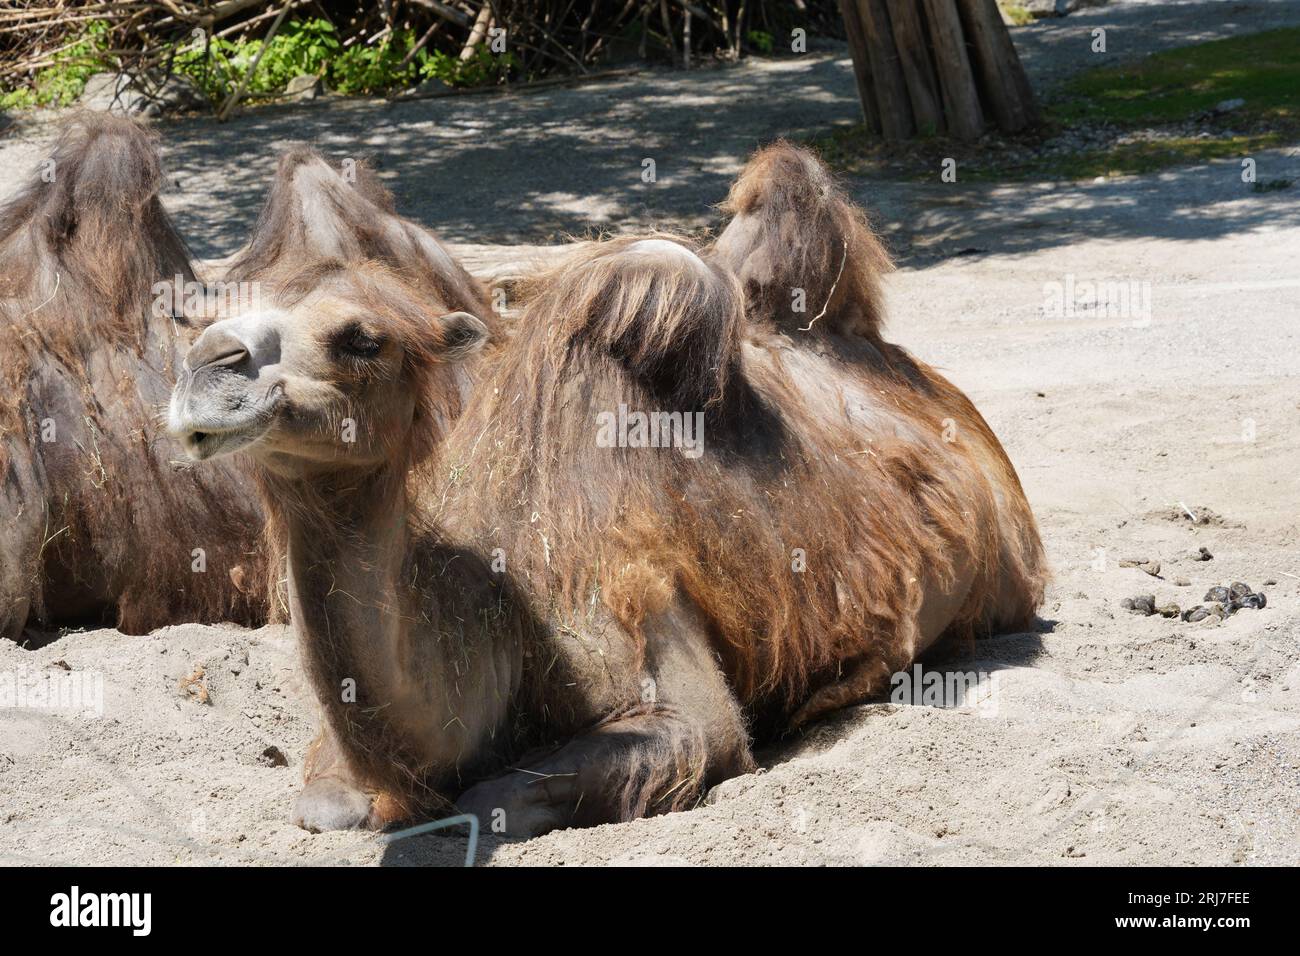 Zwei baktrische Kamele, im Lateinischen Camelus bactrianus genannt, sind auf dem Boden angesiedelt und werden in Seitenansicht gefangen. Stockfoto